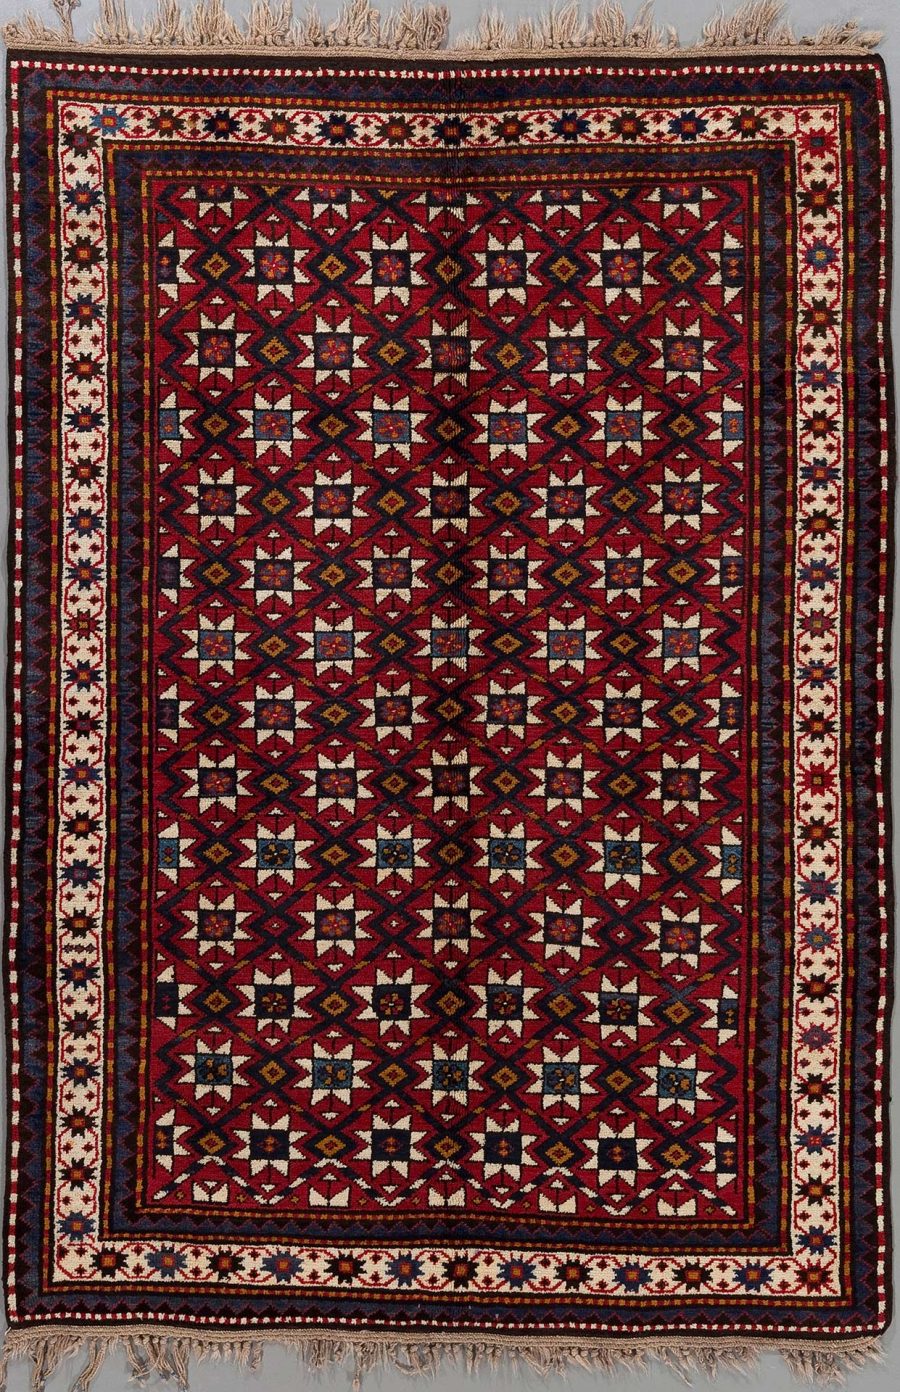 Traditioneller orientalischer Teppich mit komplexem geometrischem Muster in Rot, Blau und Beige-Tönen, umgeben von mehreren Bordüren und Fransen an den kurzen Enden.